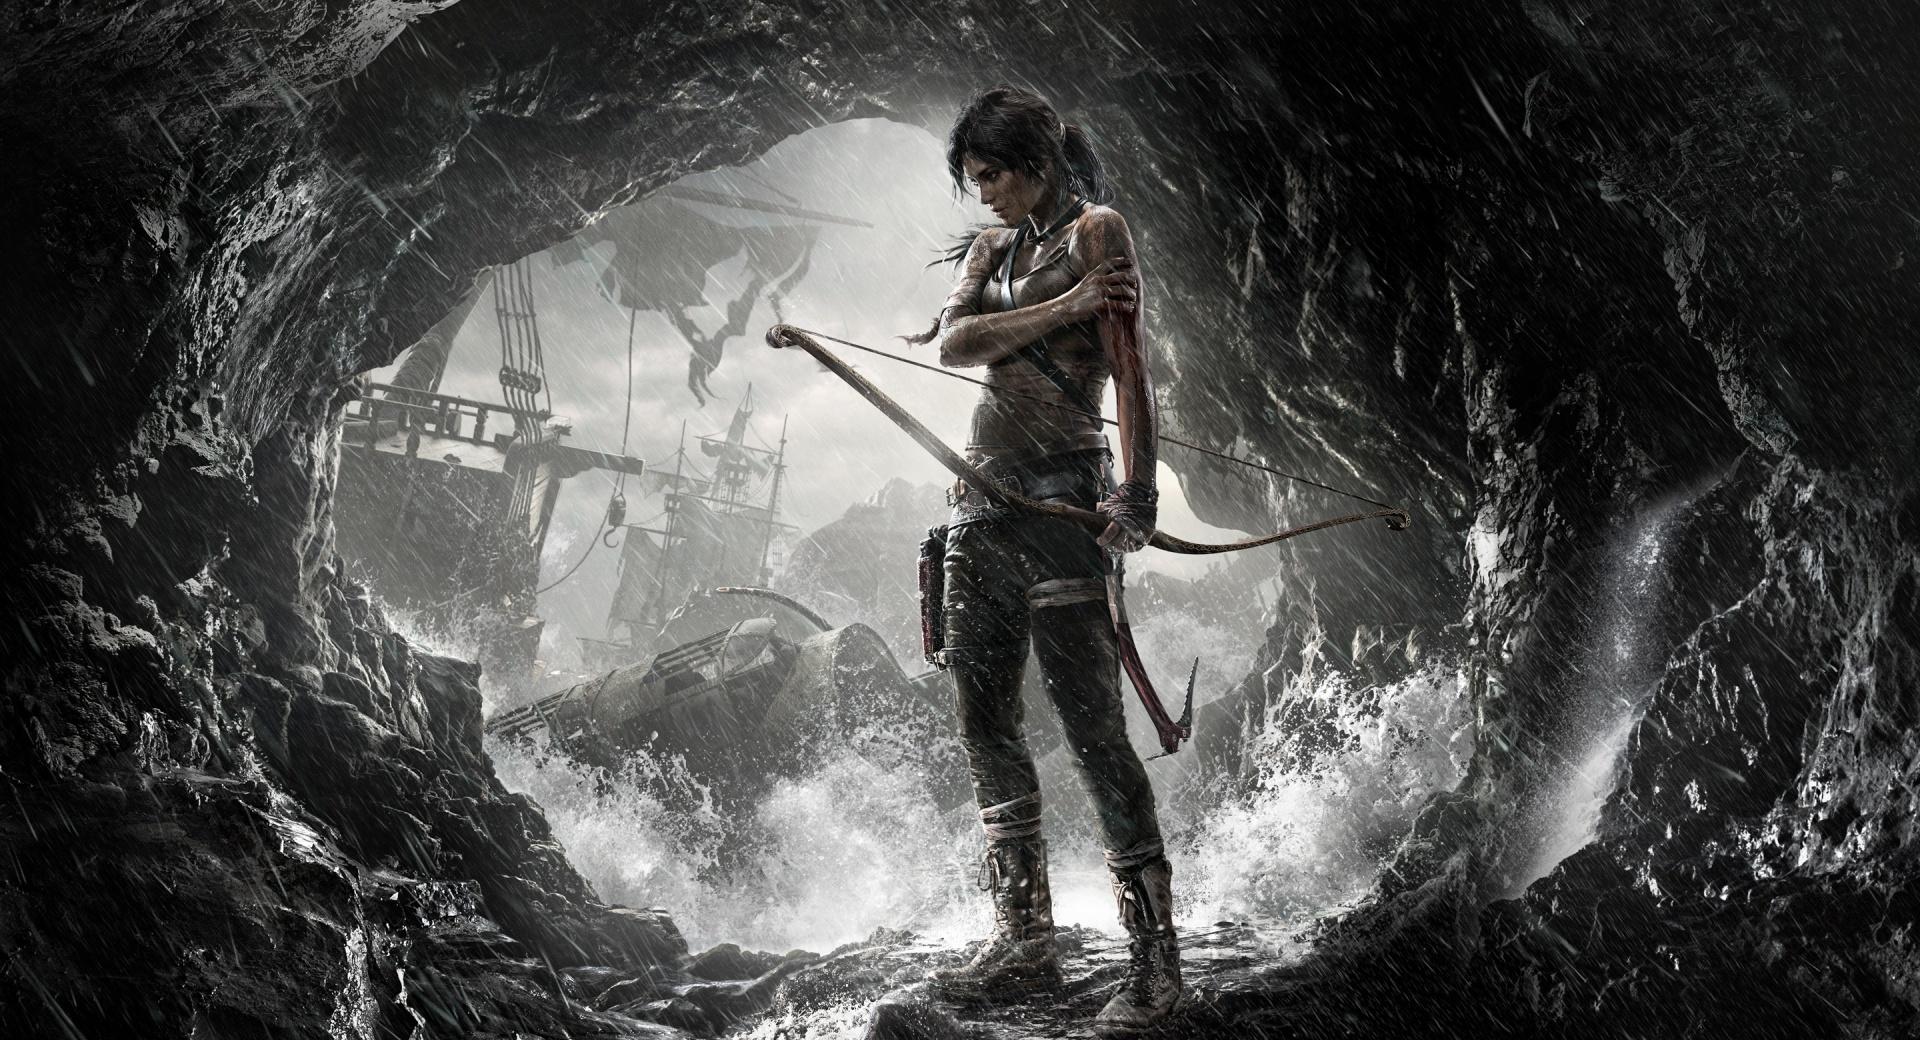 Tomb Raider Lara Croft 2013 at 2048 x 2048 iPad size wallpapers HD quality